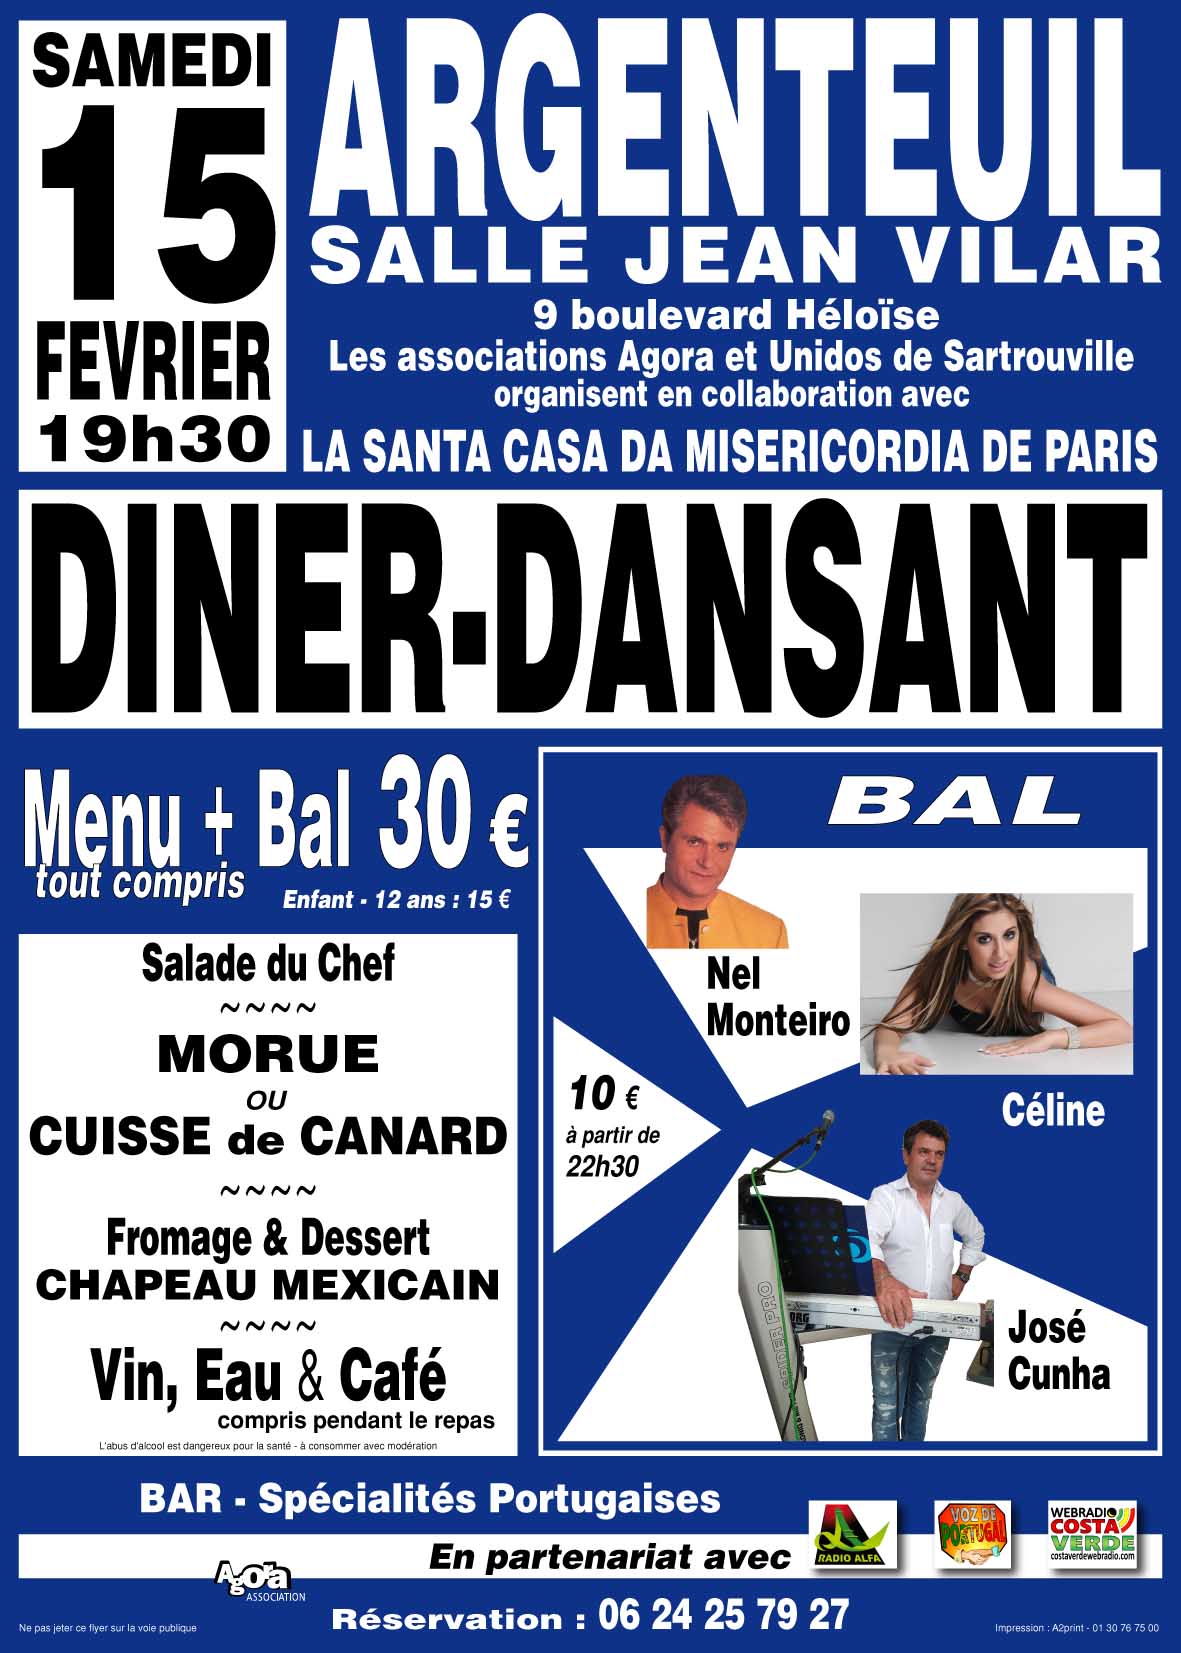 Diner-Dansant à Argenteuil, le samedi 15 février 2020